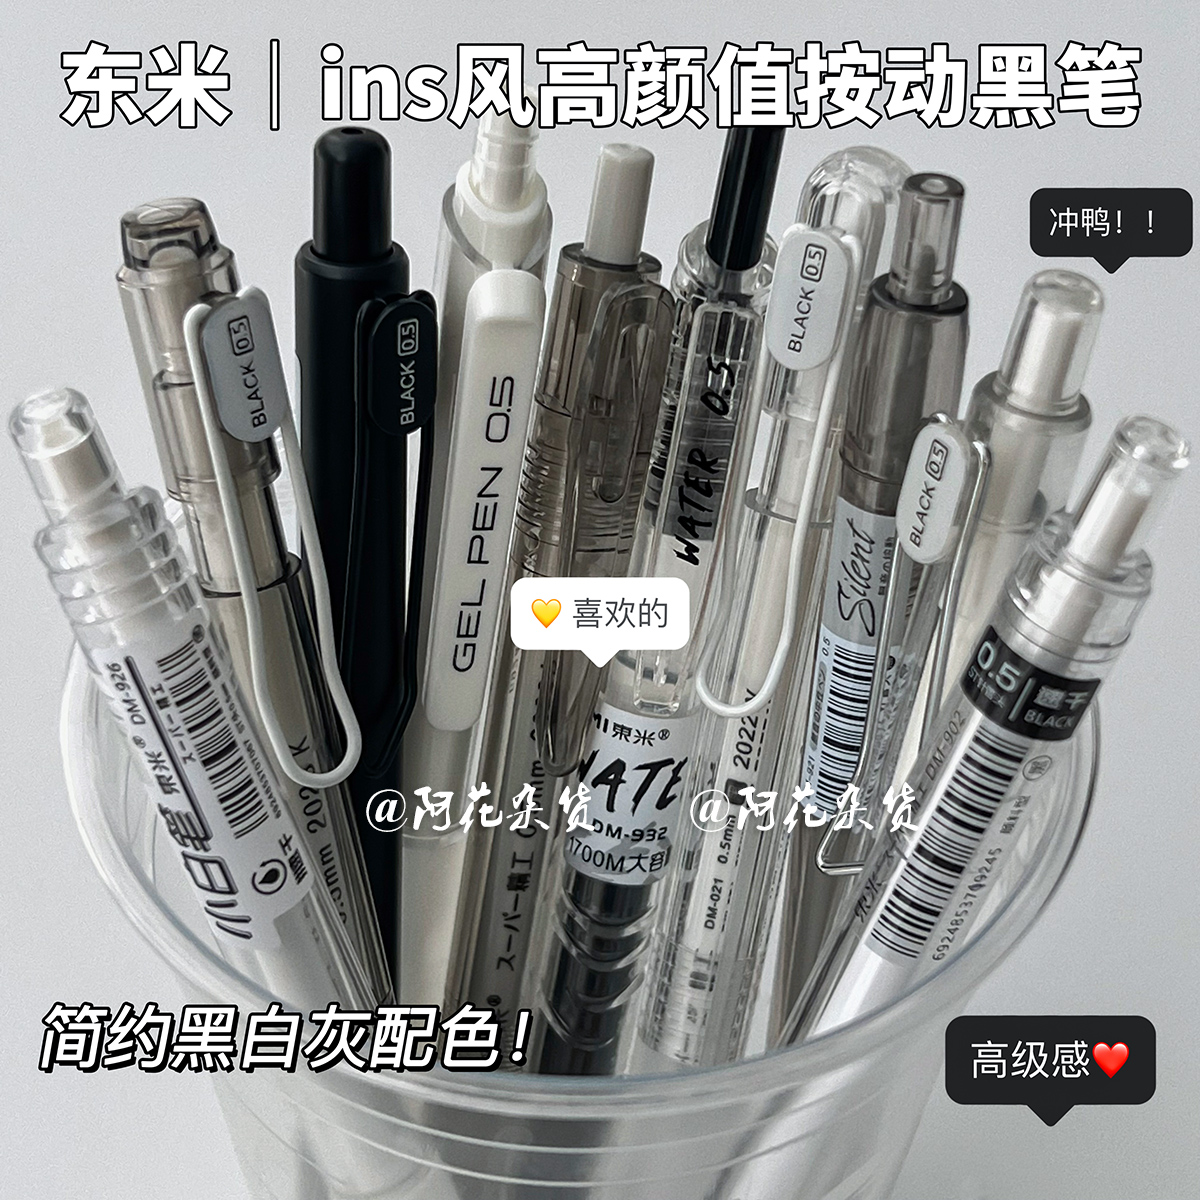 阿花杂货丨东米中性笔组合套装高颜值学生考试签名黑笔按动刷题笔